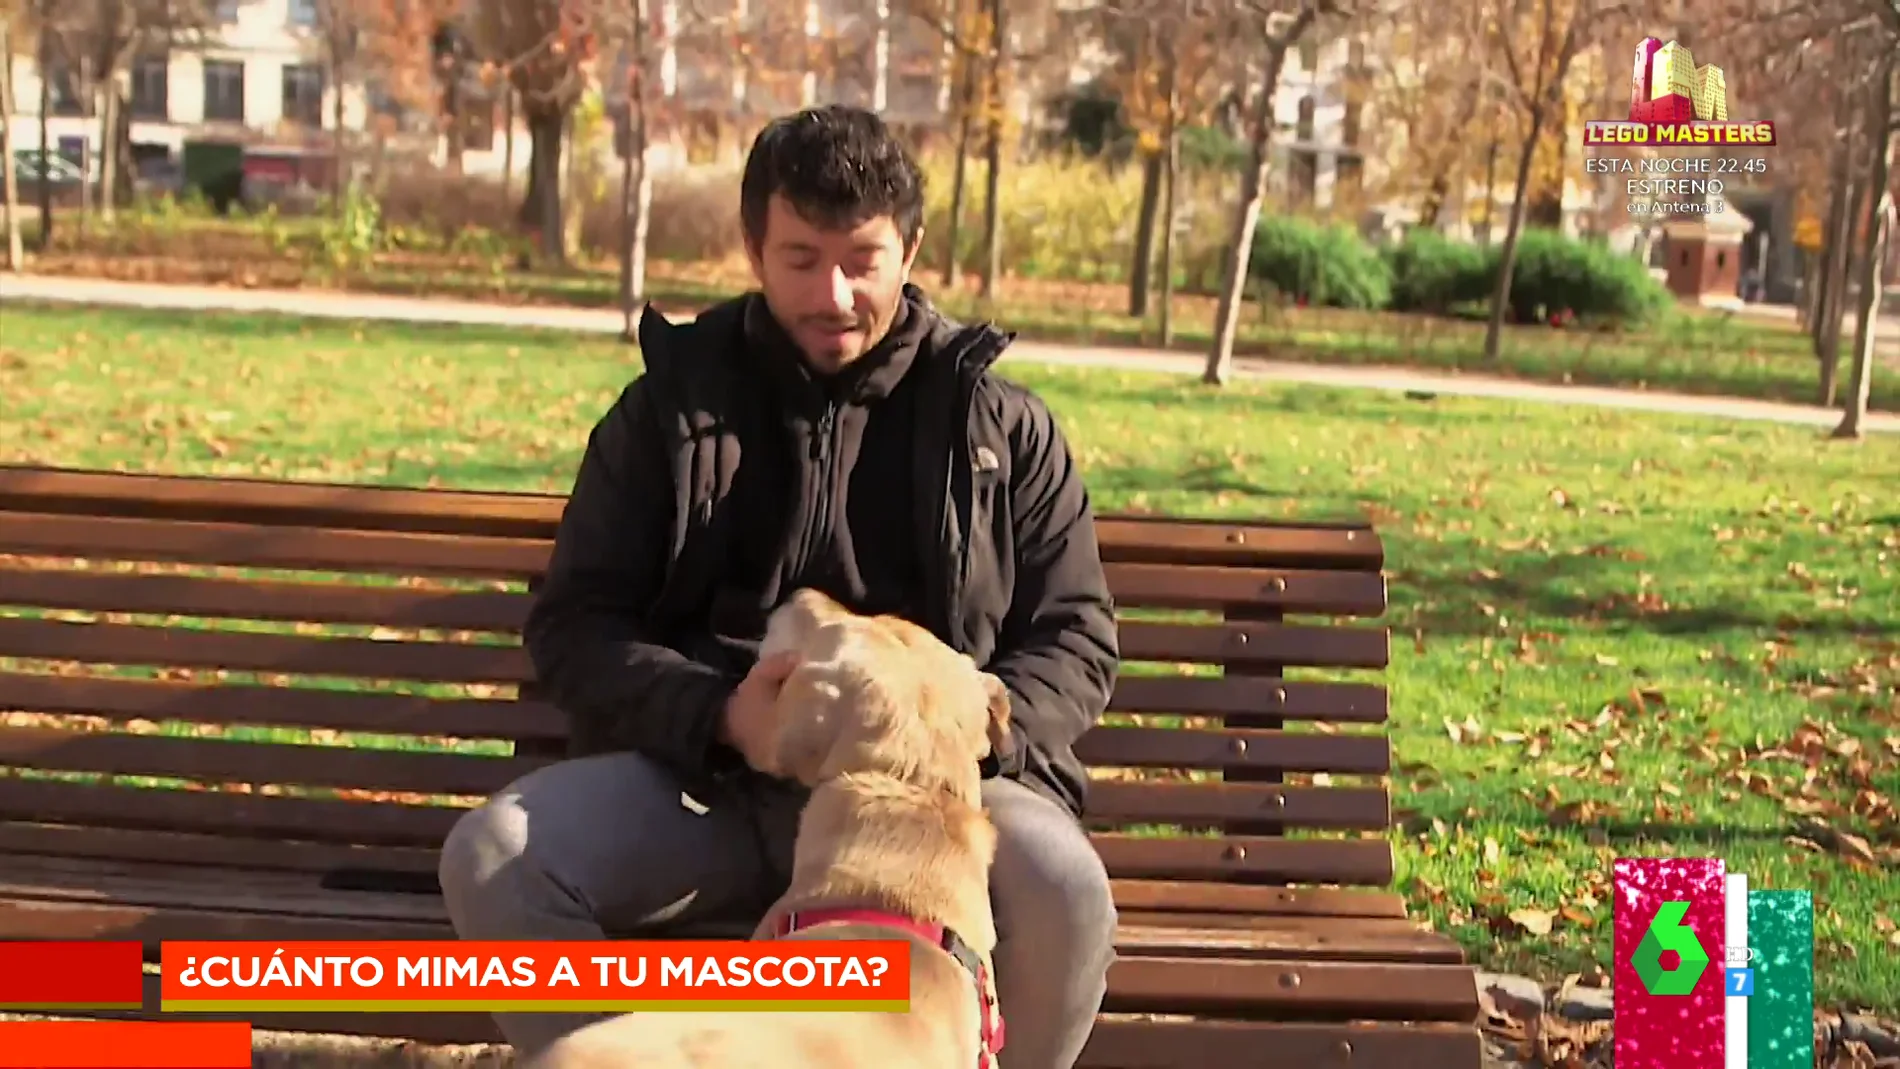 Los españoles confiesan los mayores sacrificios que han realizado por sus mascotas: "Por mi perro sí, por mi pareja no"